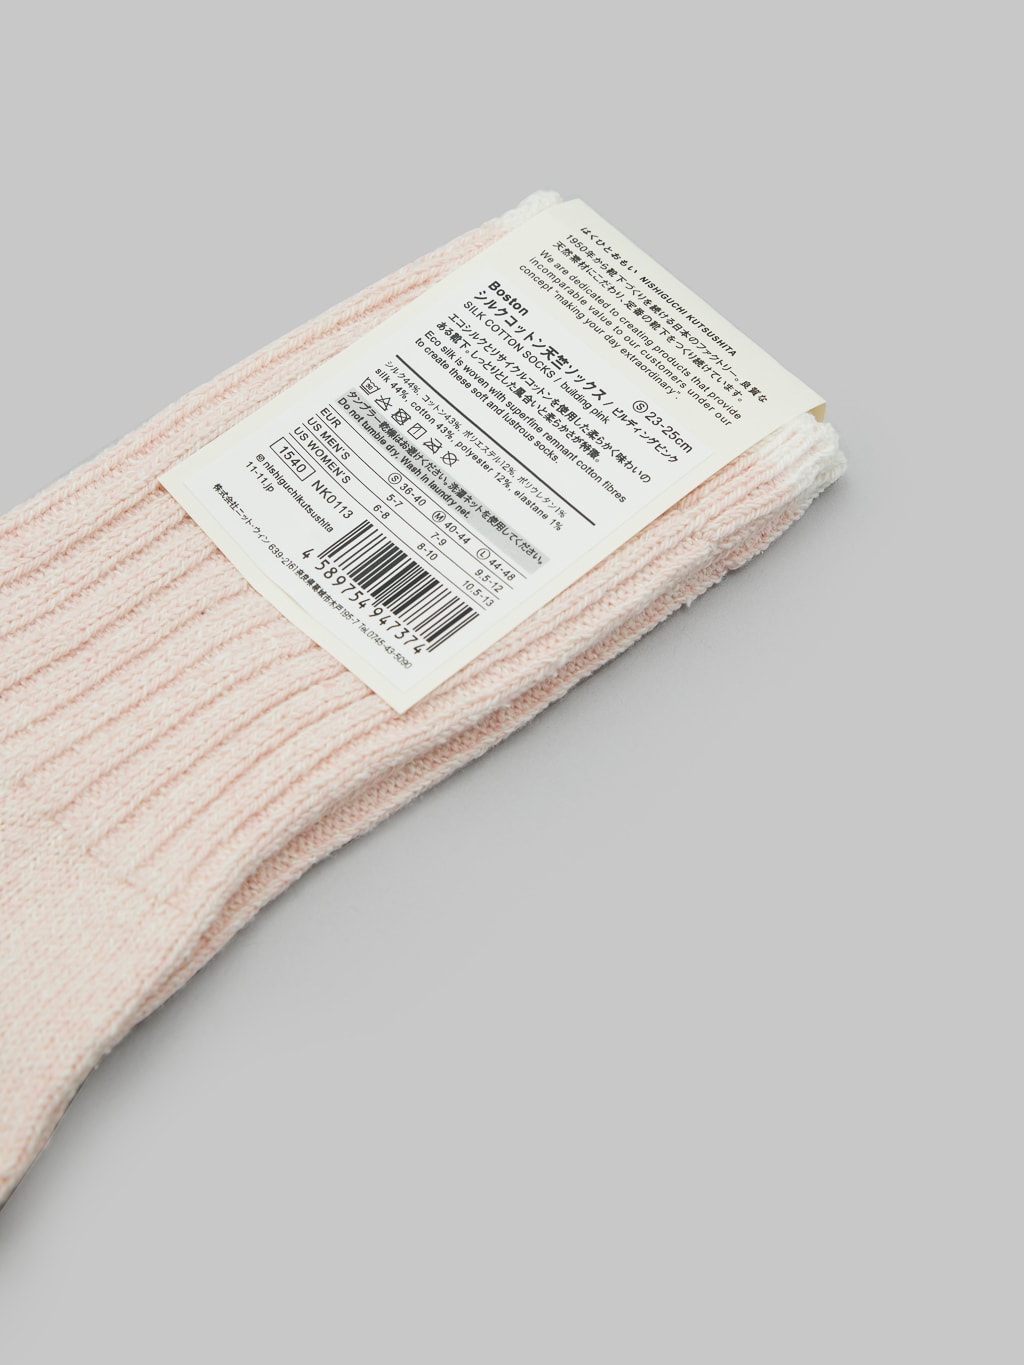 nishiguchi kutsushita silk cotton socks pink composition